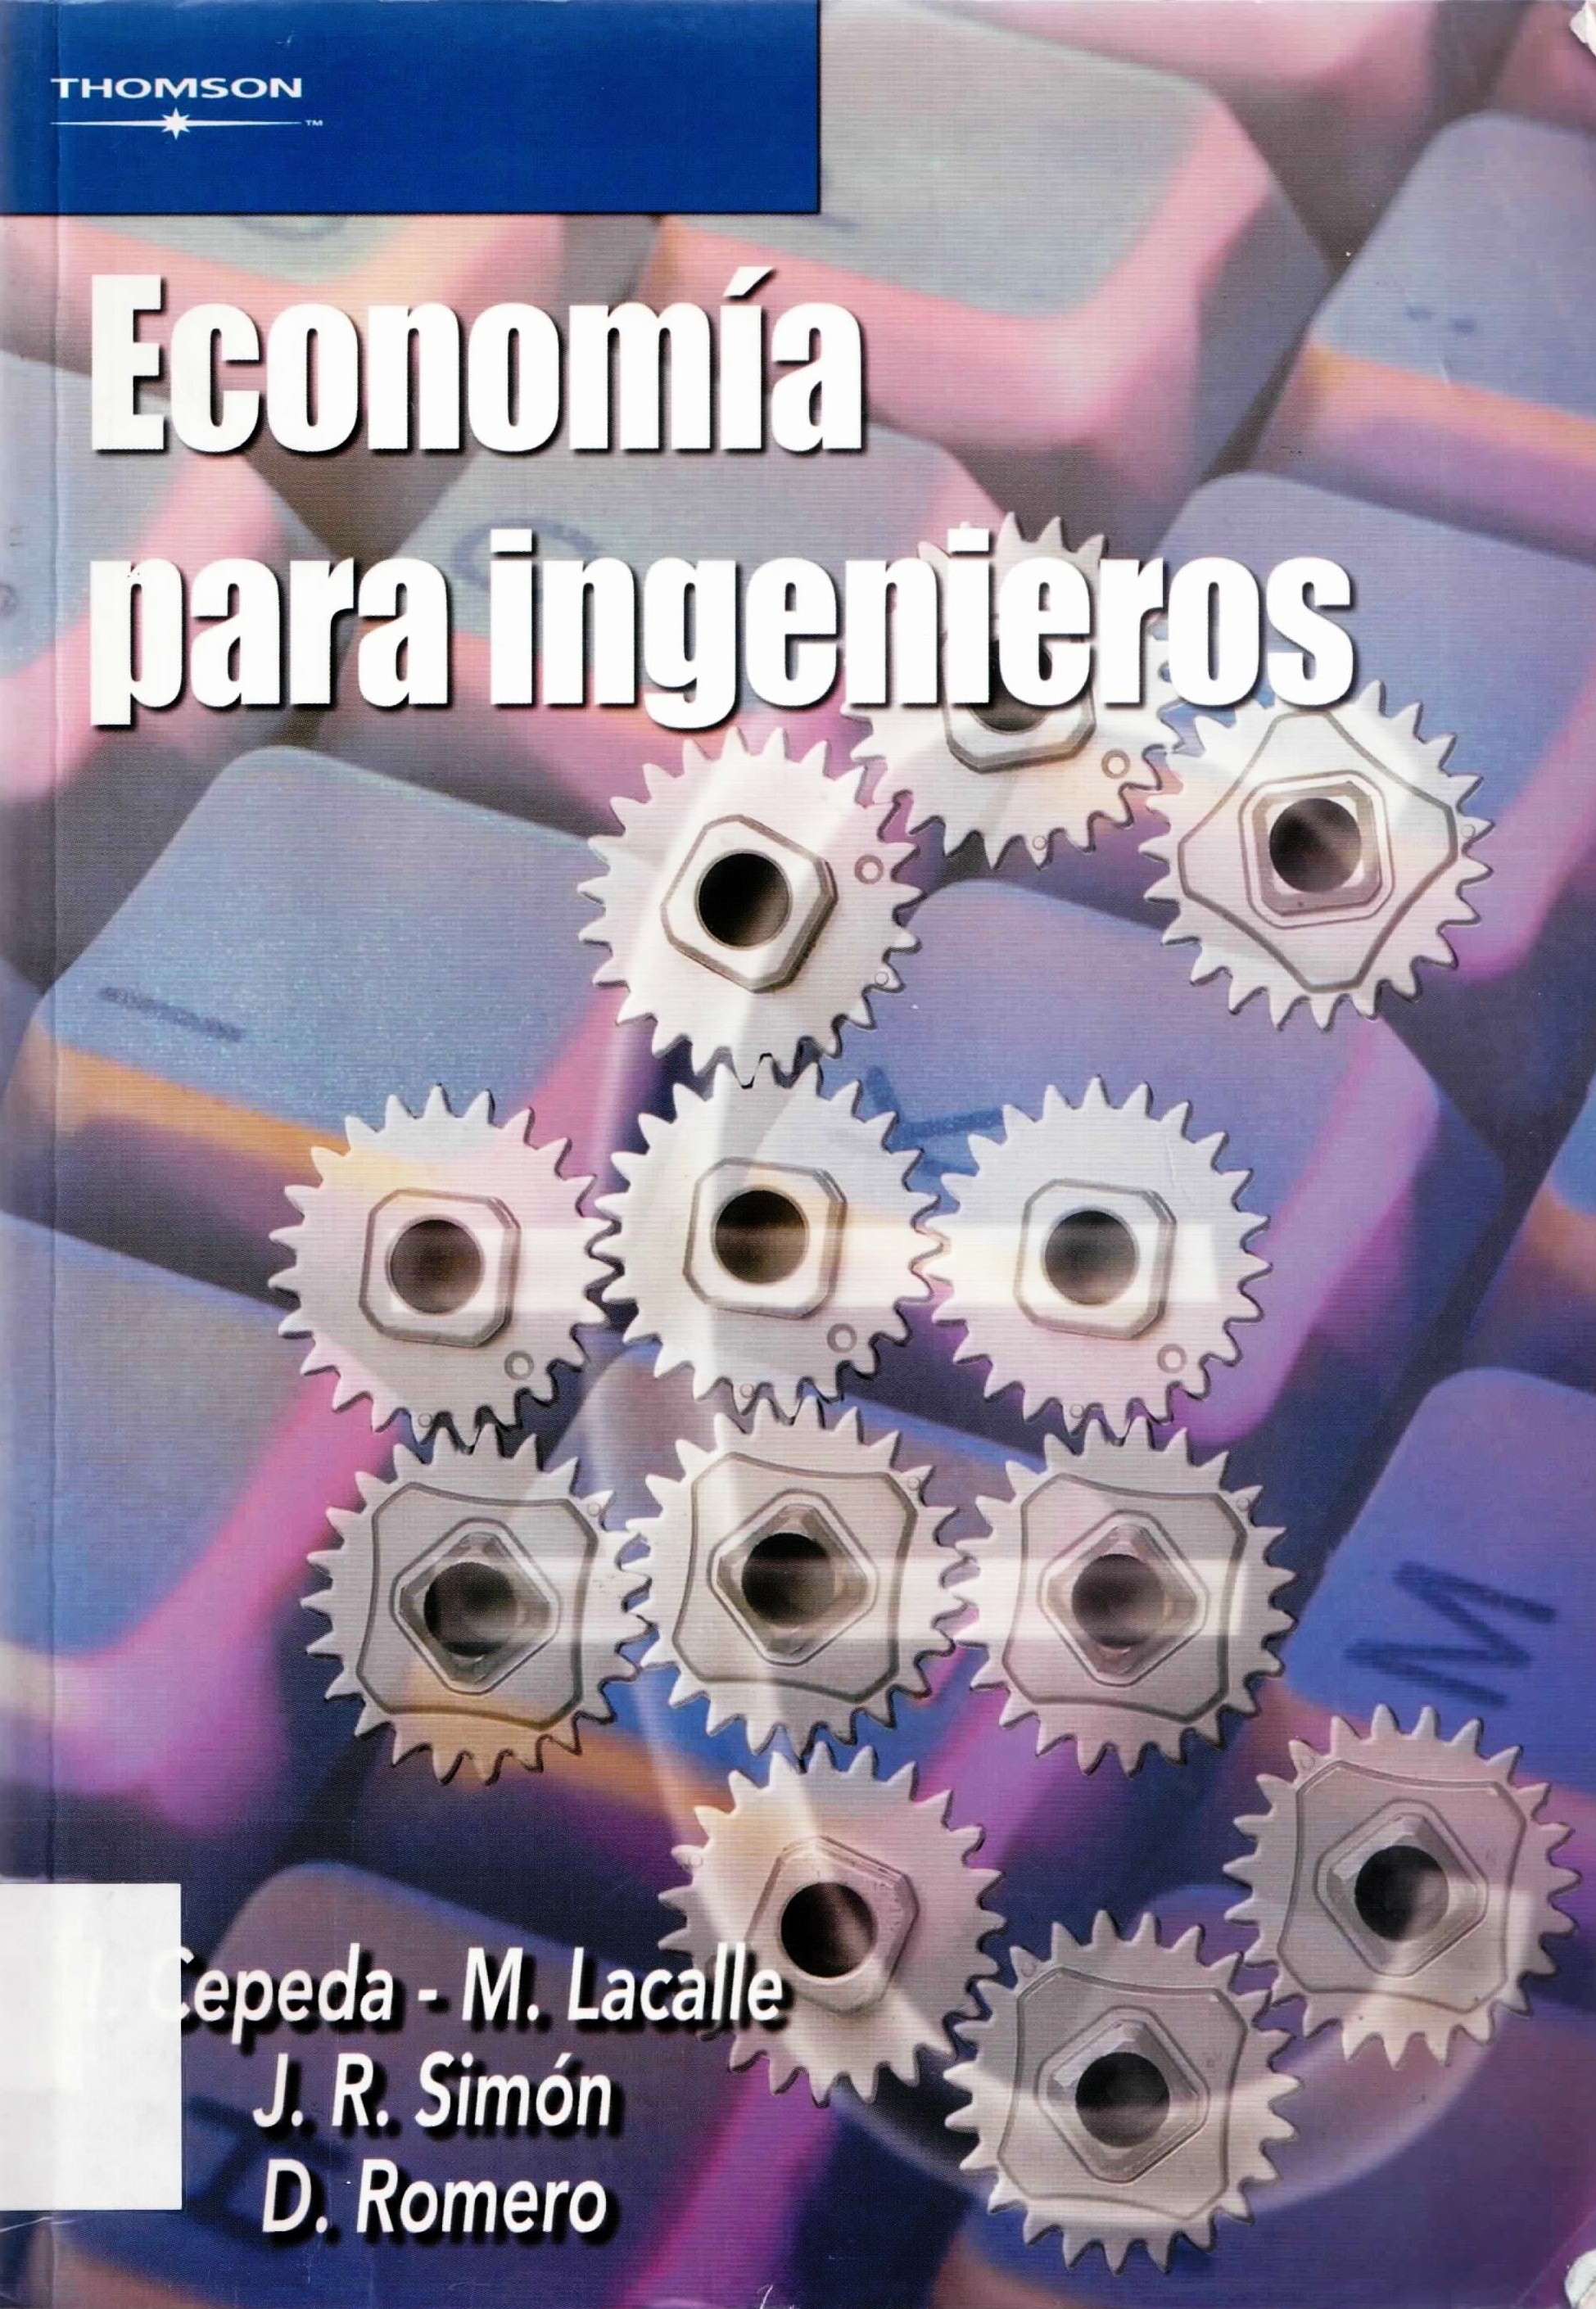 Economía para ingenieros: teoría y práctica